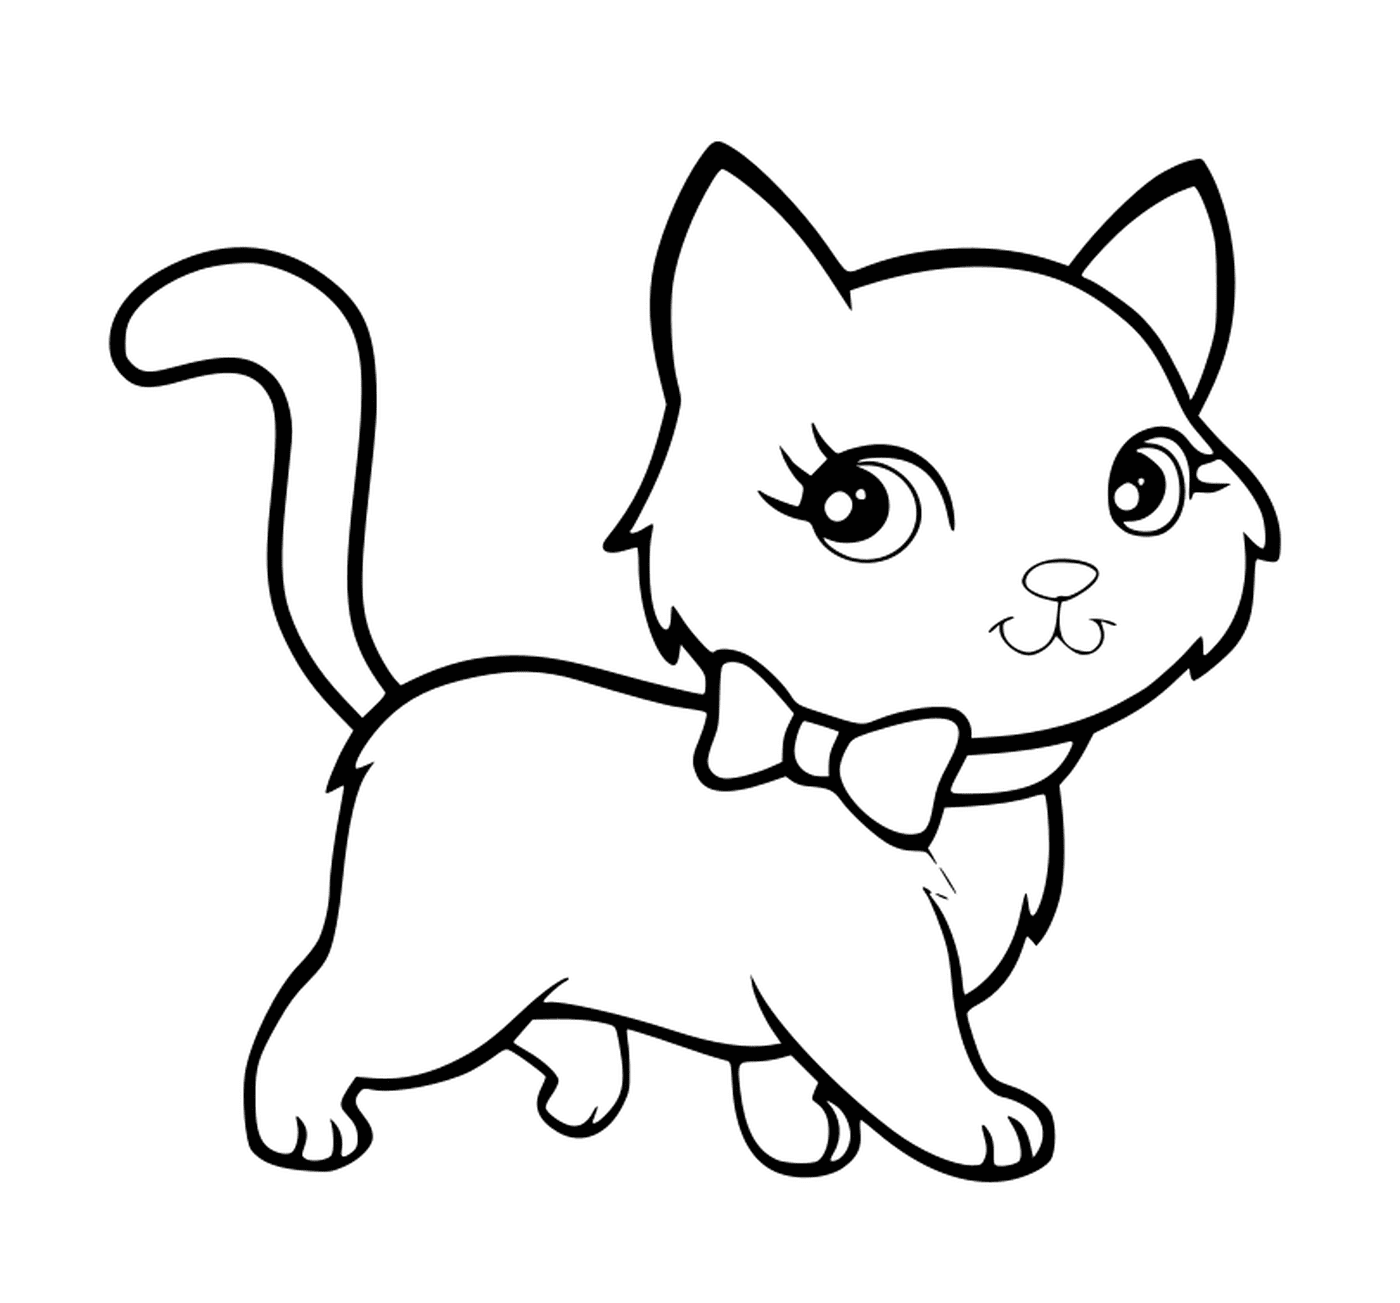  Un gatito kawaii super lindo que trabaja con elegancia 